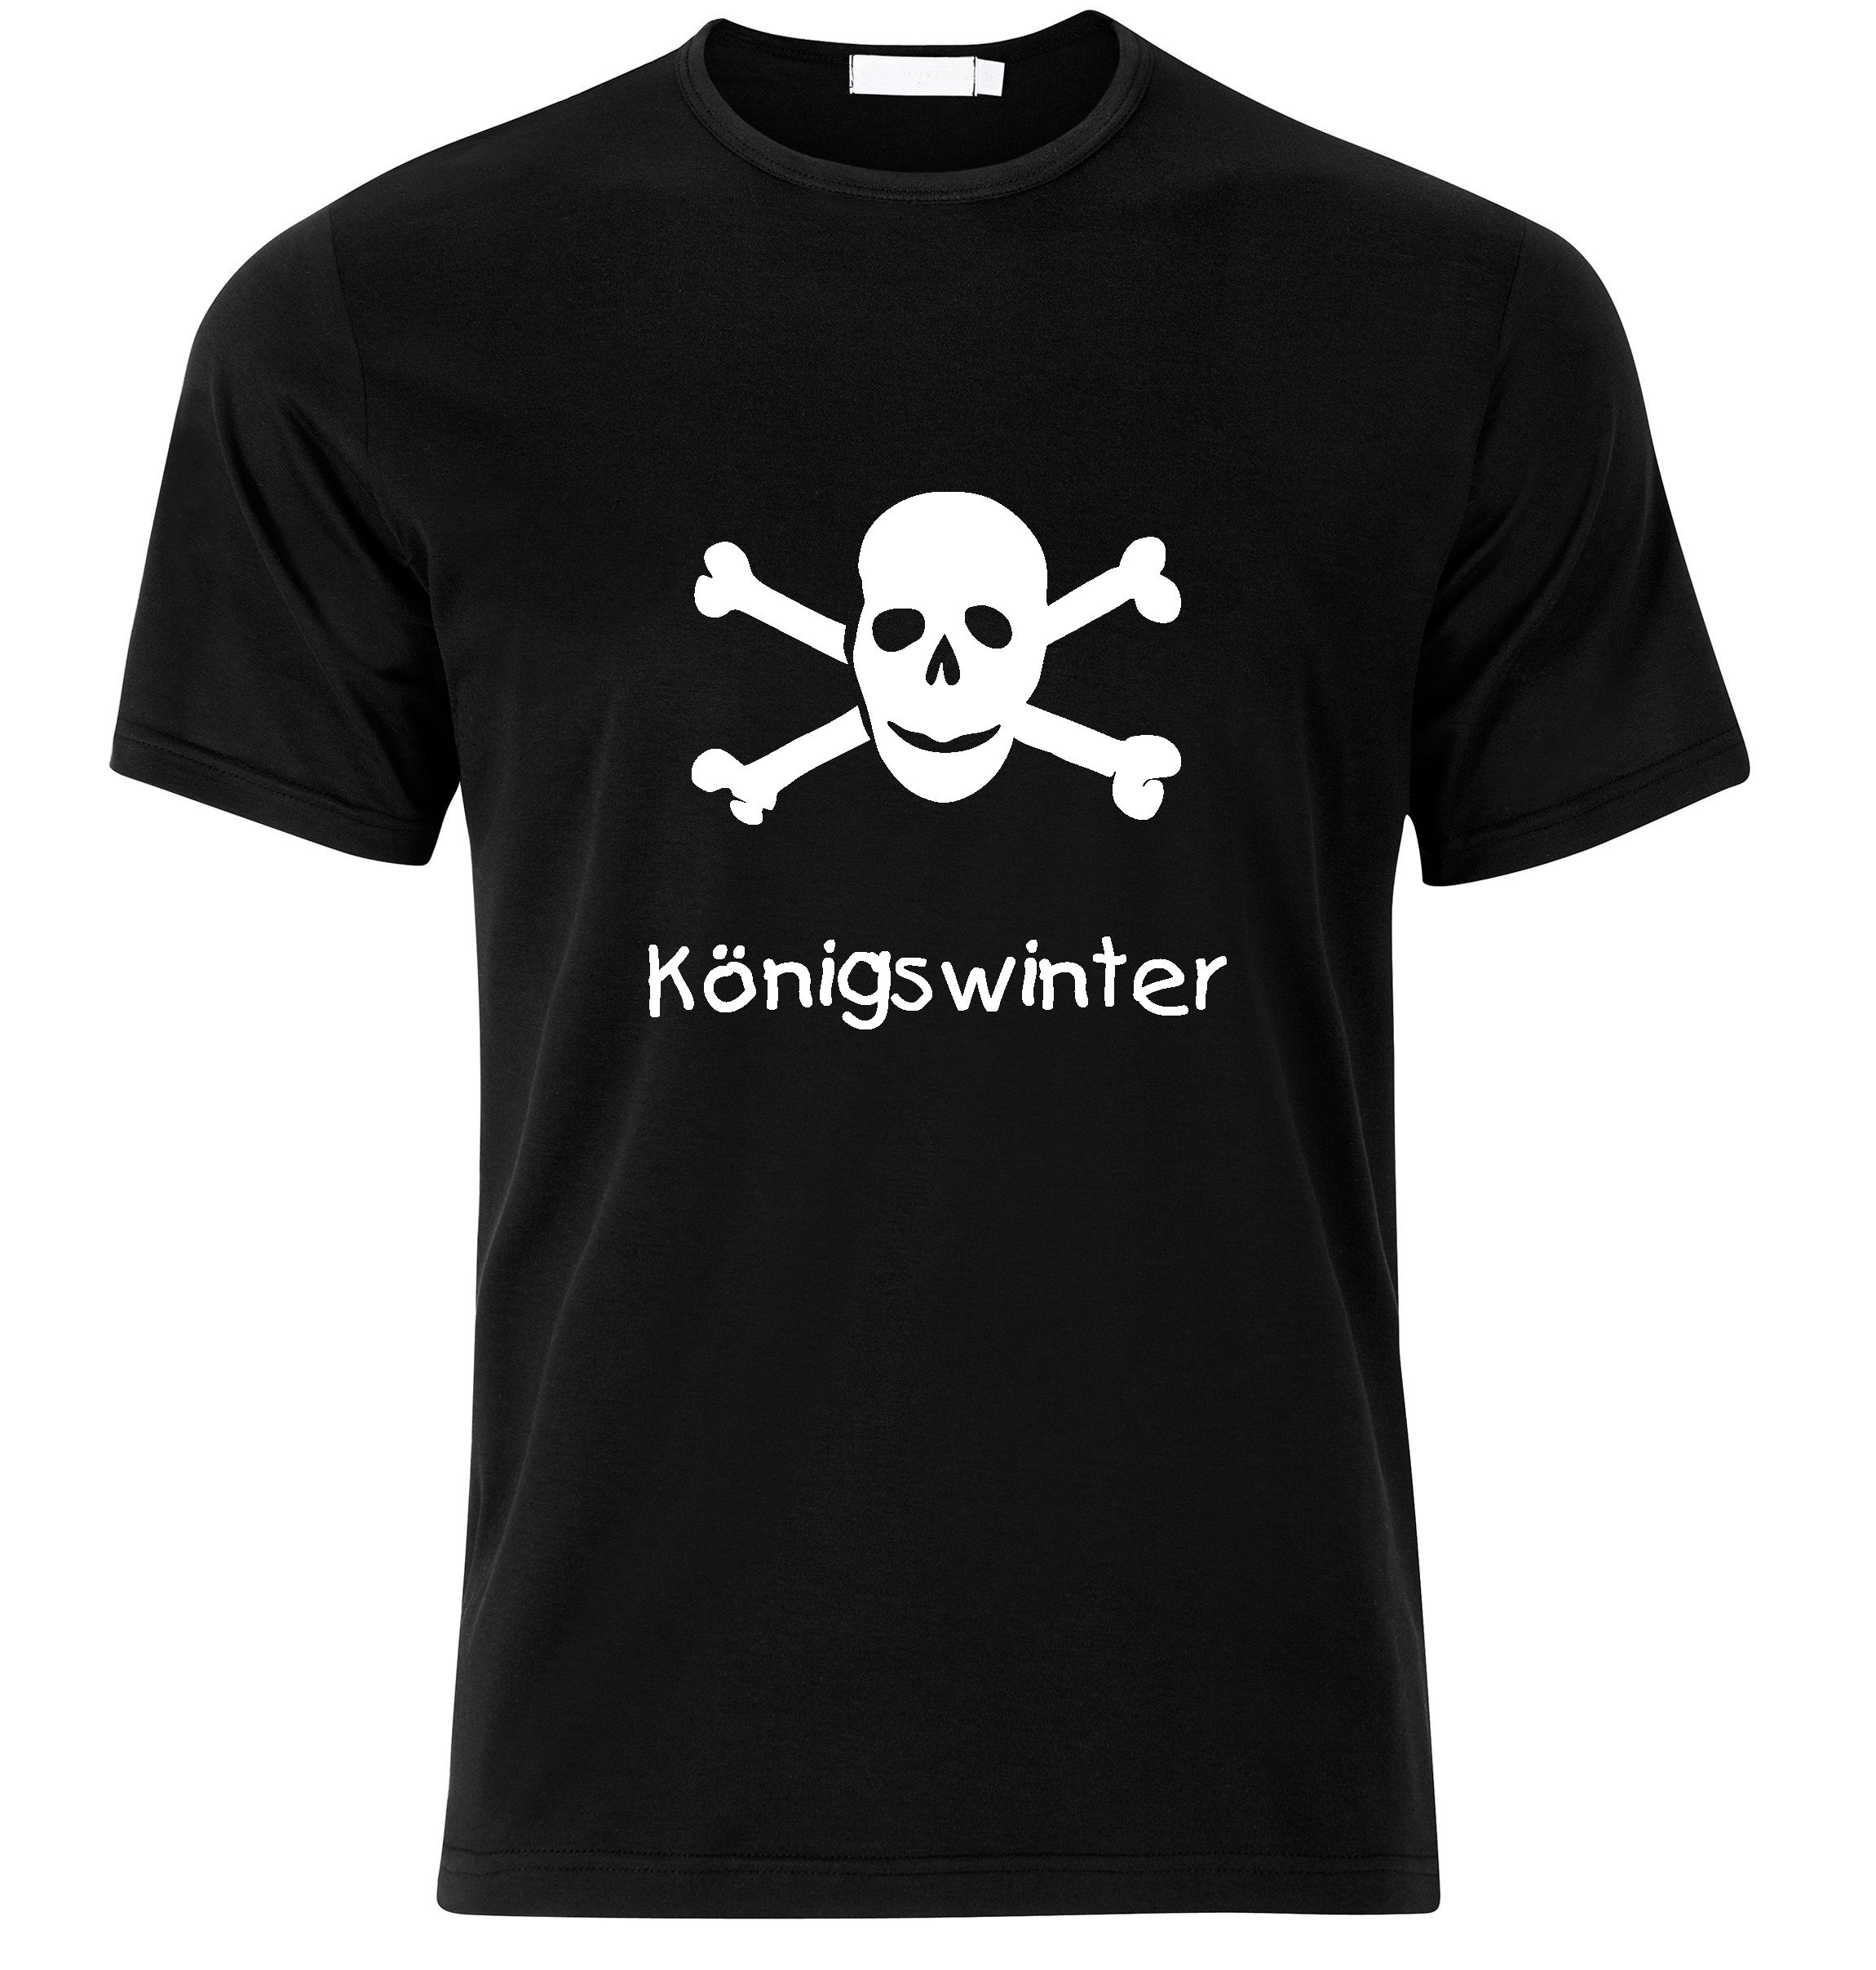 T-Shirt Königswinter Jolly Roger, Totenkopf